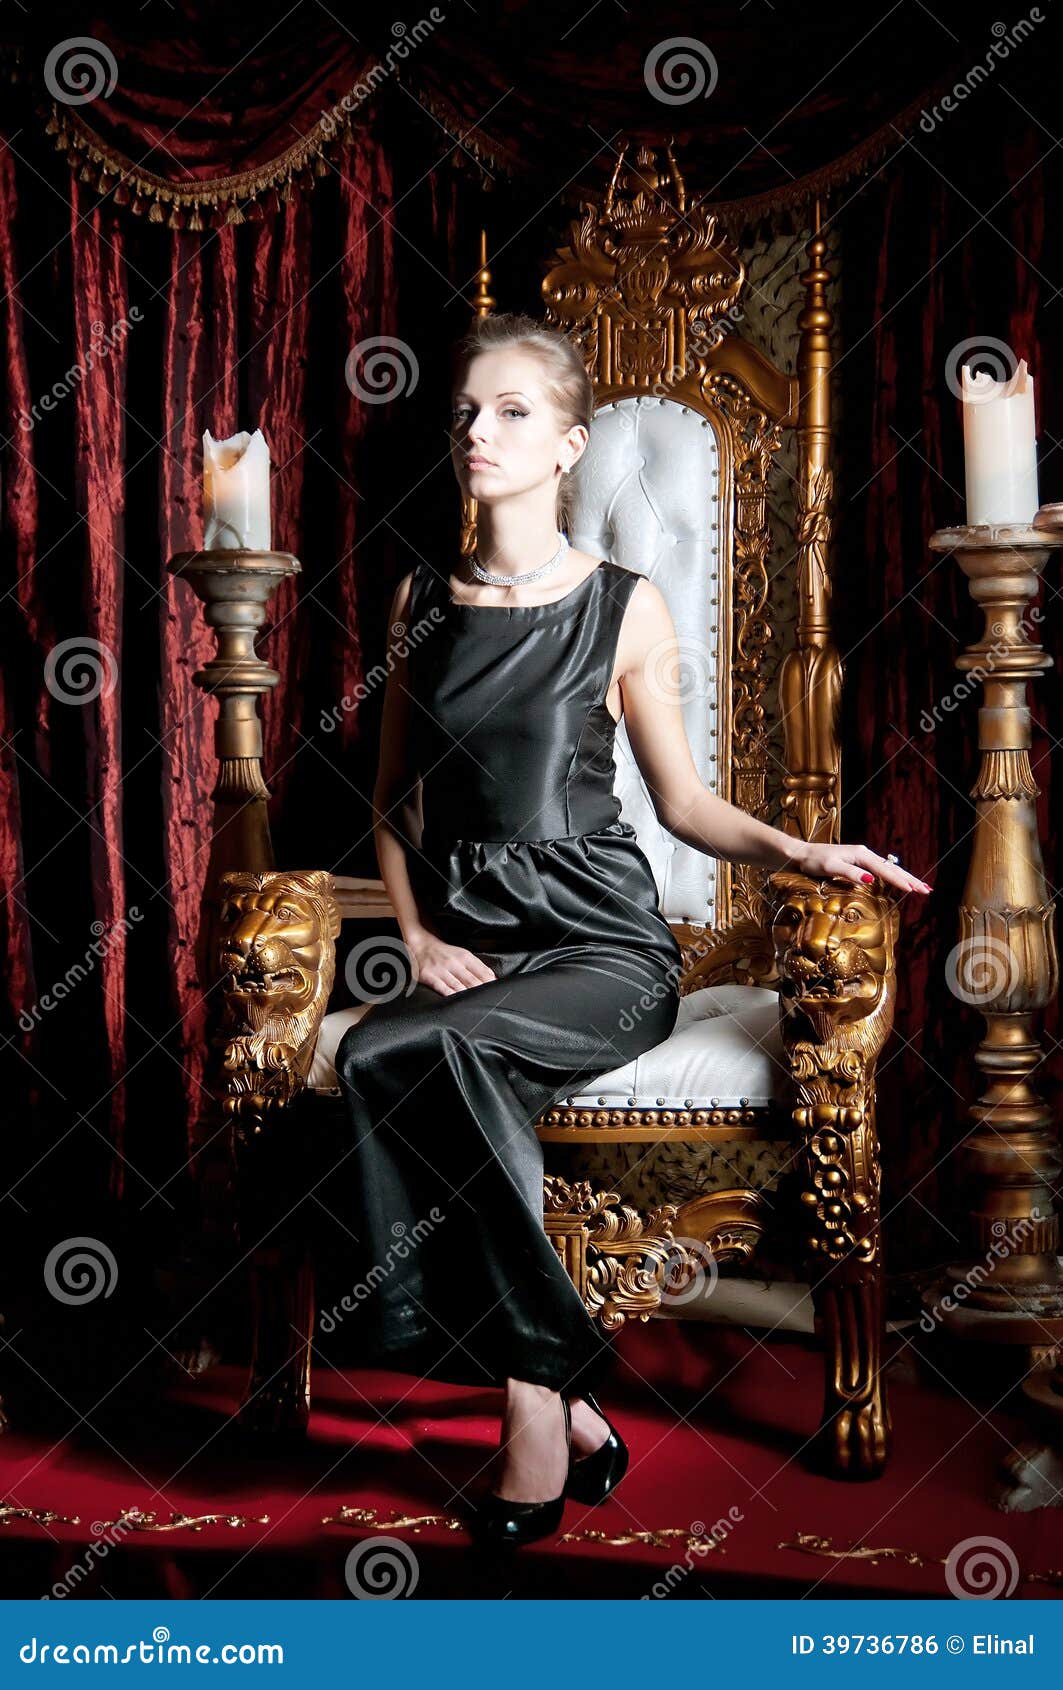 Risultato immagini per women sitting on throne